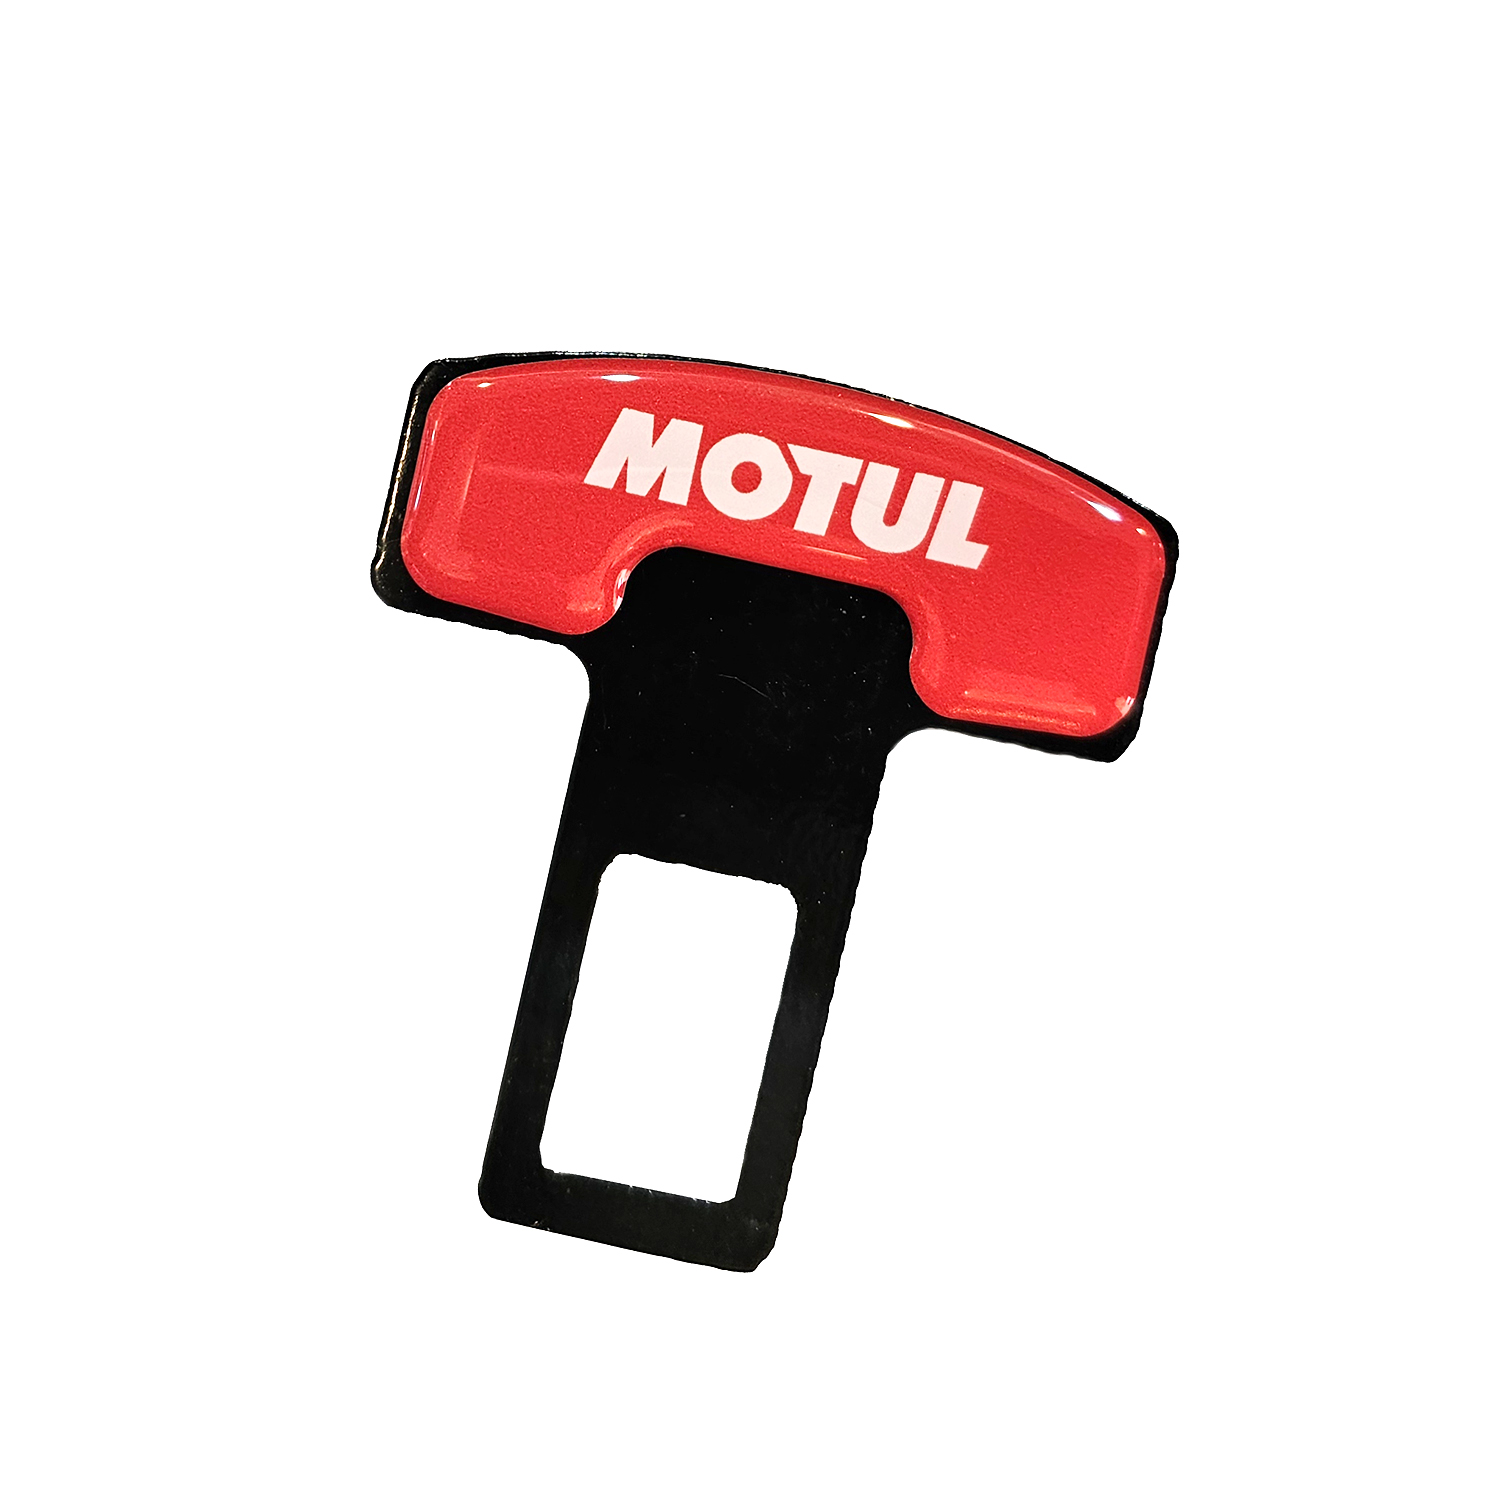 صدا گیر الارم کمربند ایمنی خودرو موتول مدل M123 مناسب برای مینی کوپر